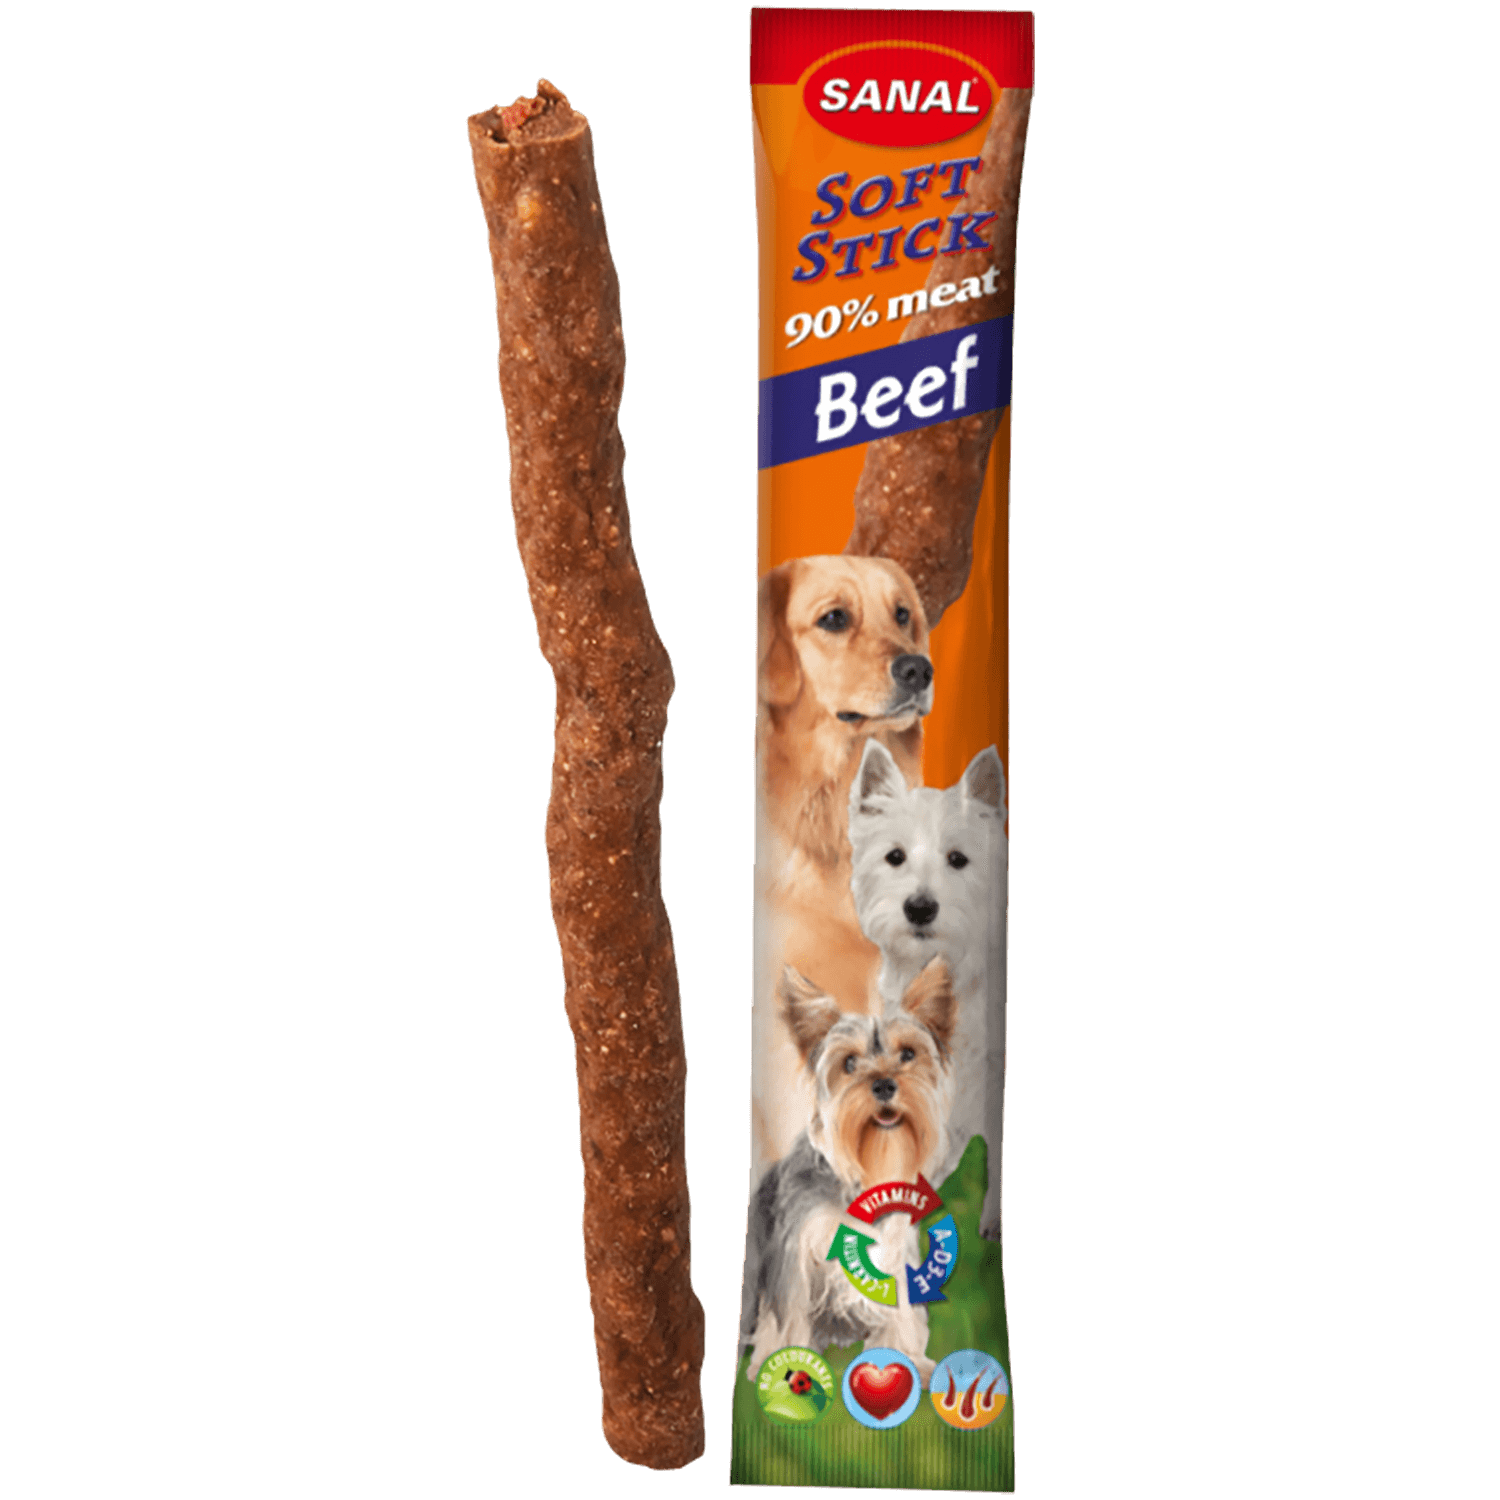 SANAL Soft Sticks Beef Палочки для собак с говядиной (цена за 1 палочку)